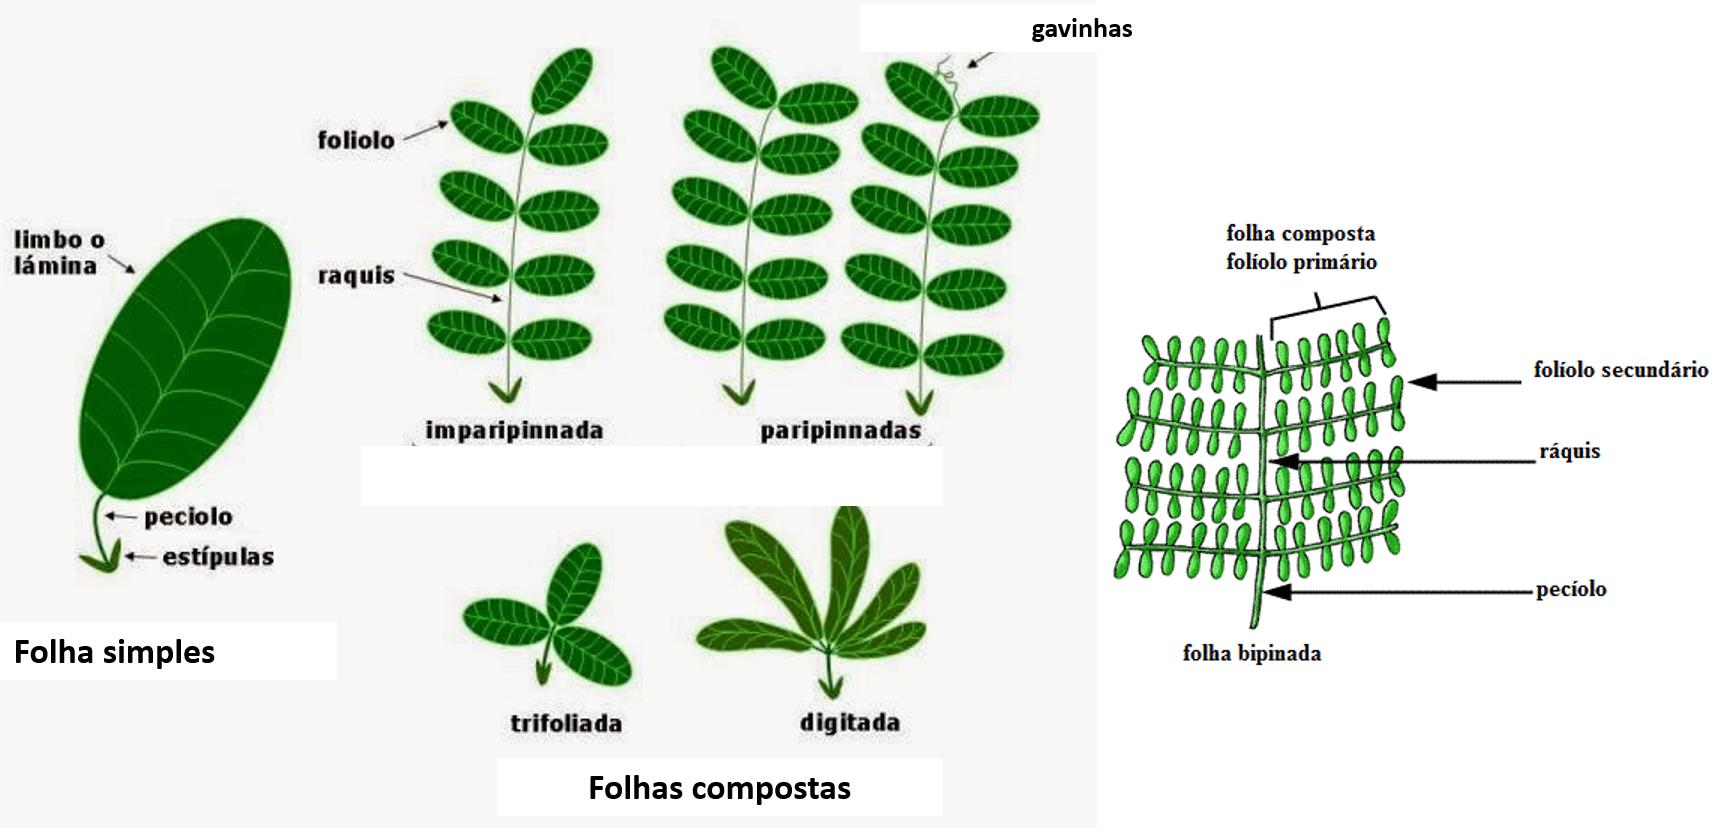 Figura 29 Esquema da folha em leguminosas (neste caso a folha é composta - trifoliada). O ráquis é a parte do eixo mediano da folha, que sustenta os folíolos.